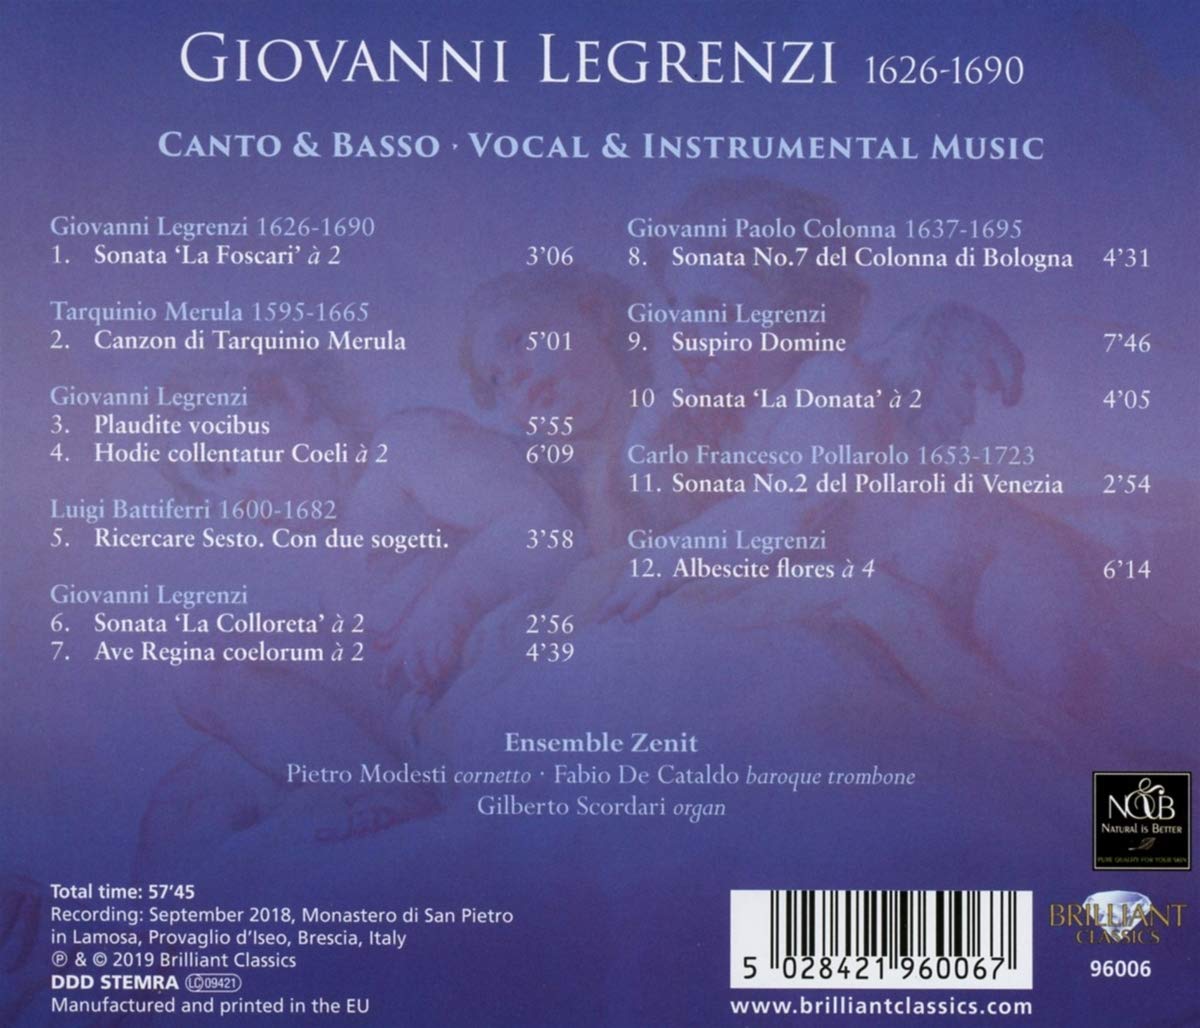 Ensemble Zenit 지오반니 레그렌치: 바로크트롬본, 코르네토 소나타, 모데트 모음곡